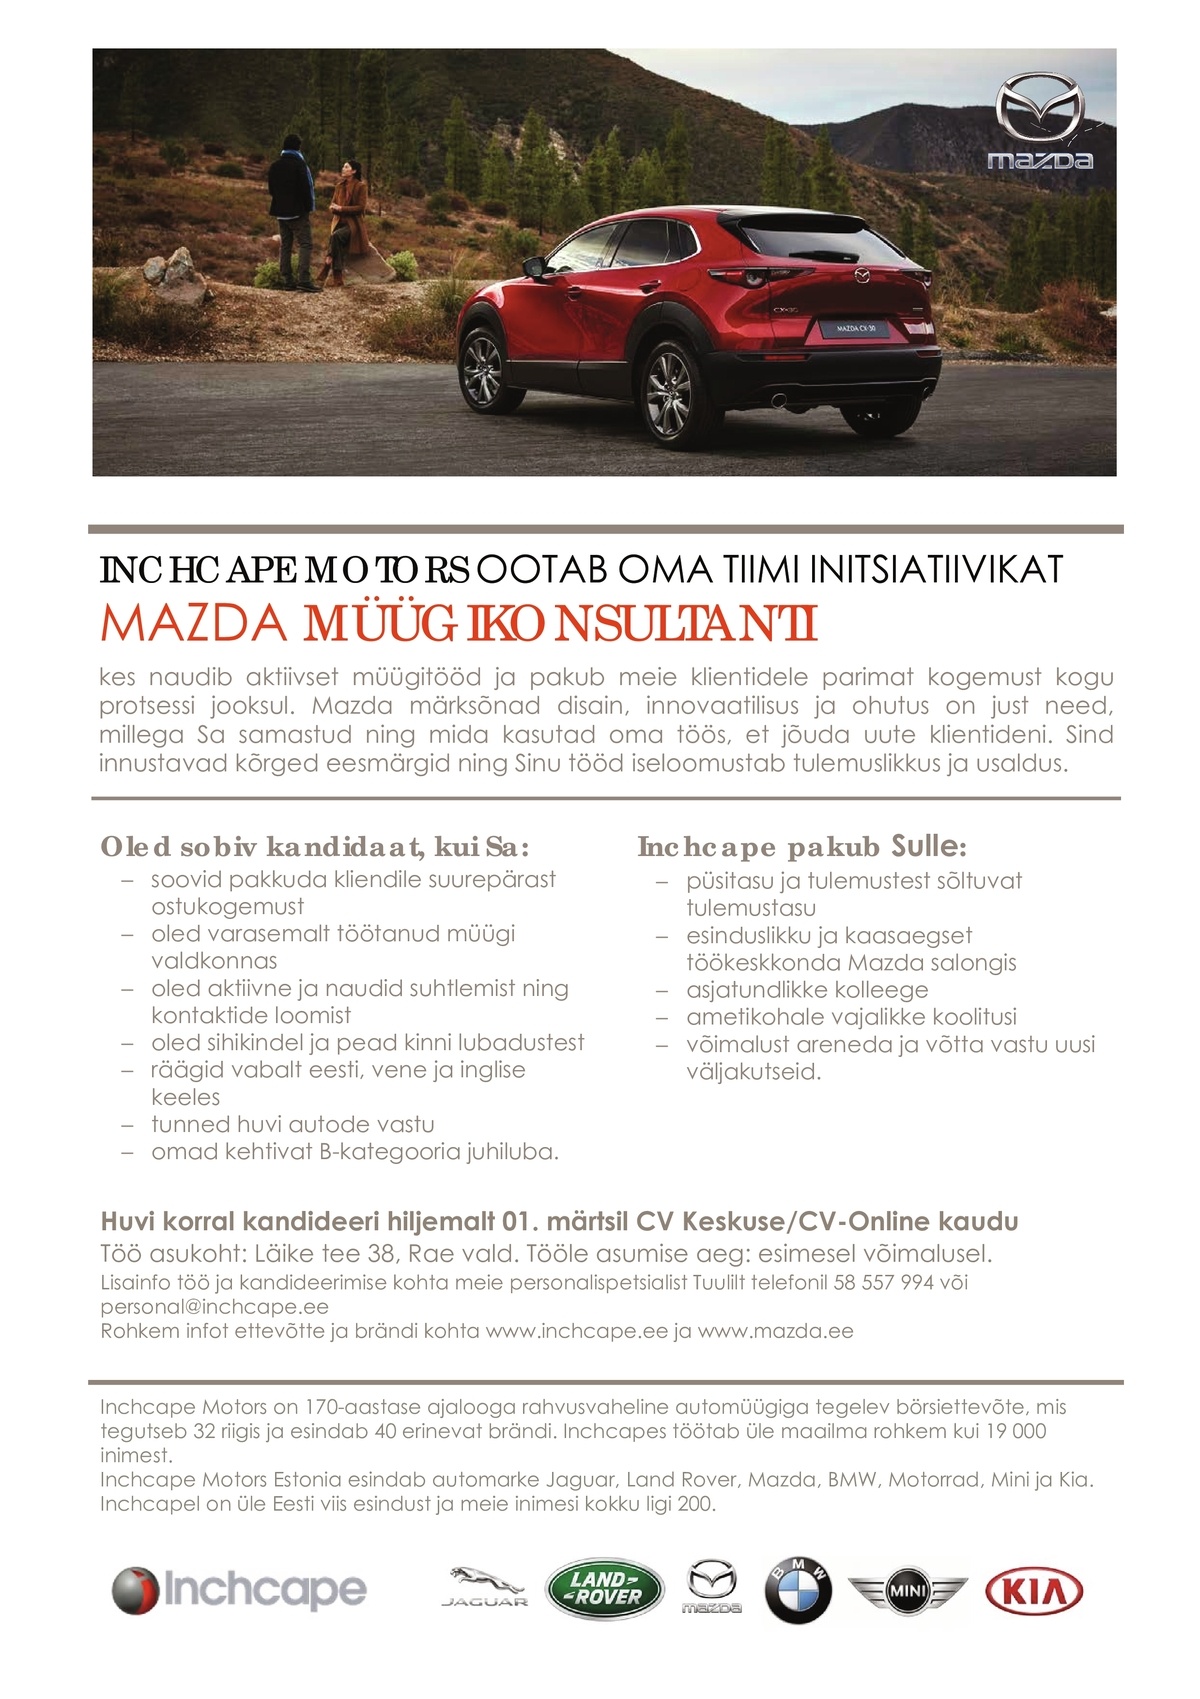 Inchcape Motors Estonia OÜ Mazda müügikonsultant